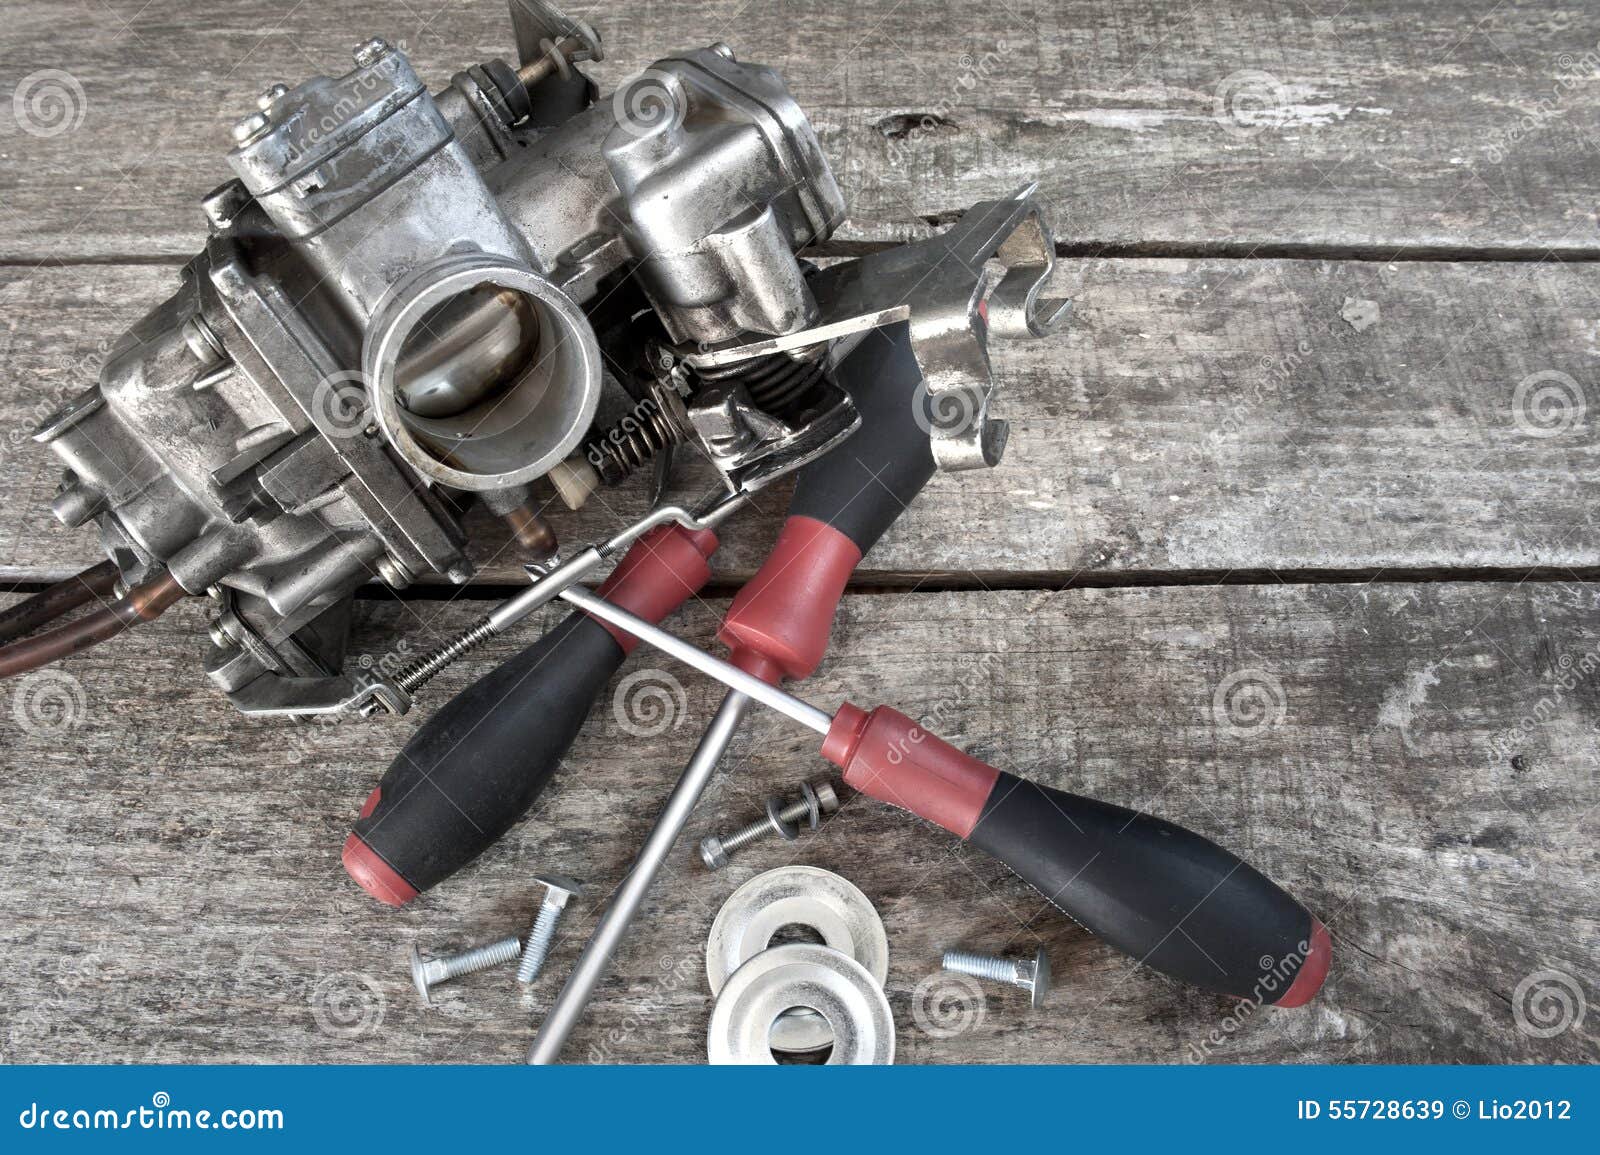 carburetor and screwdrivers